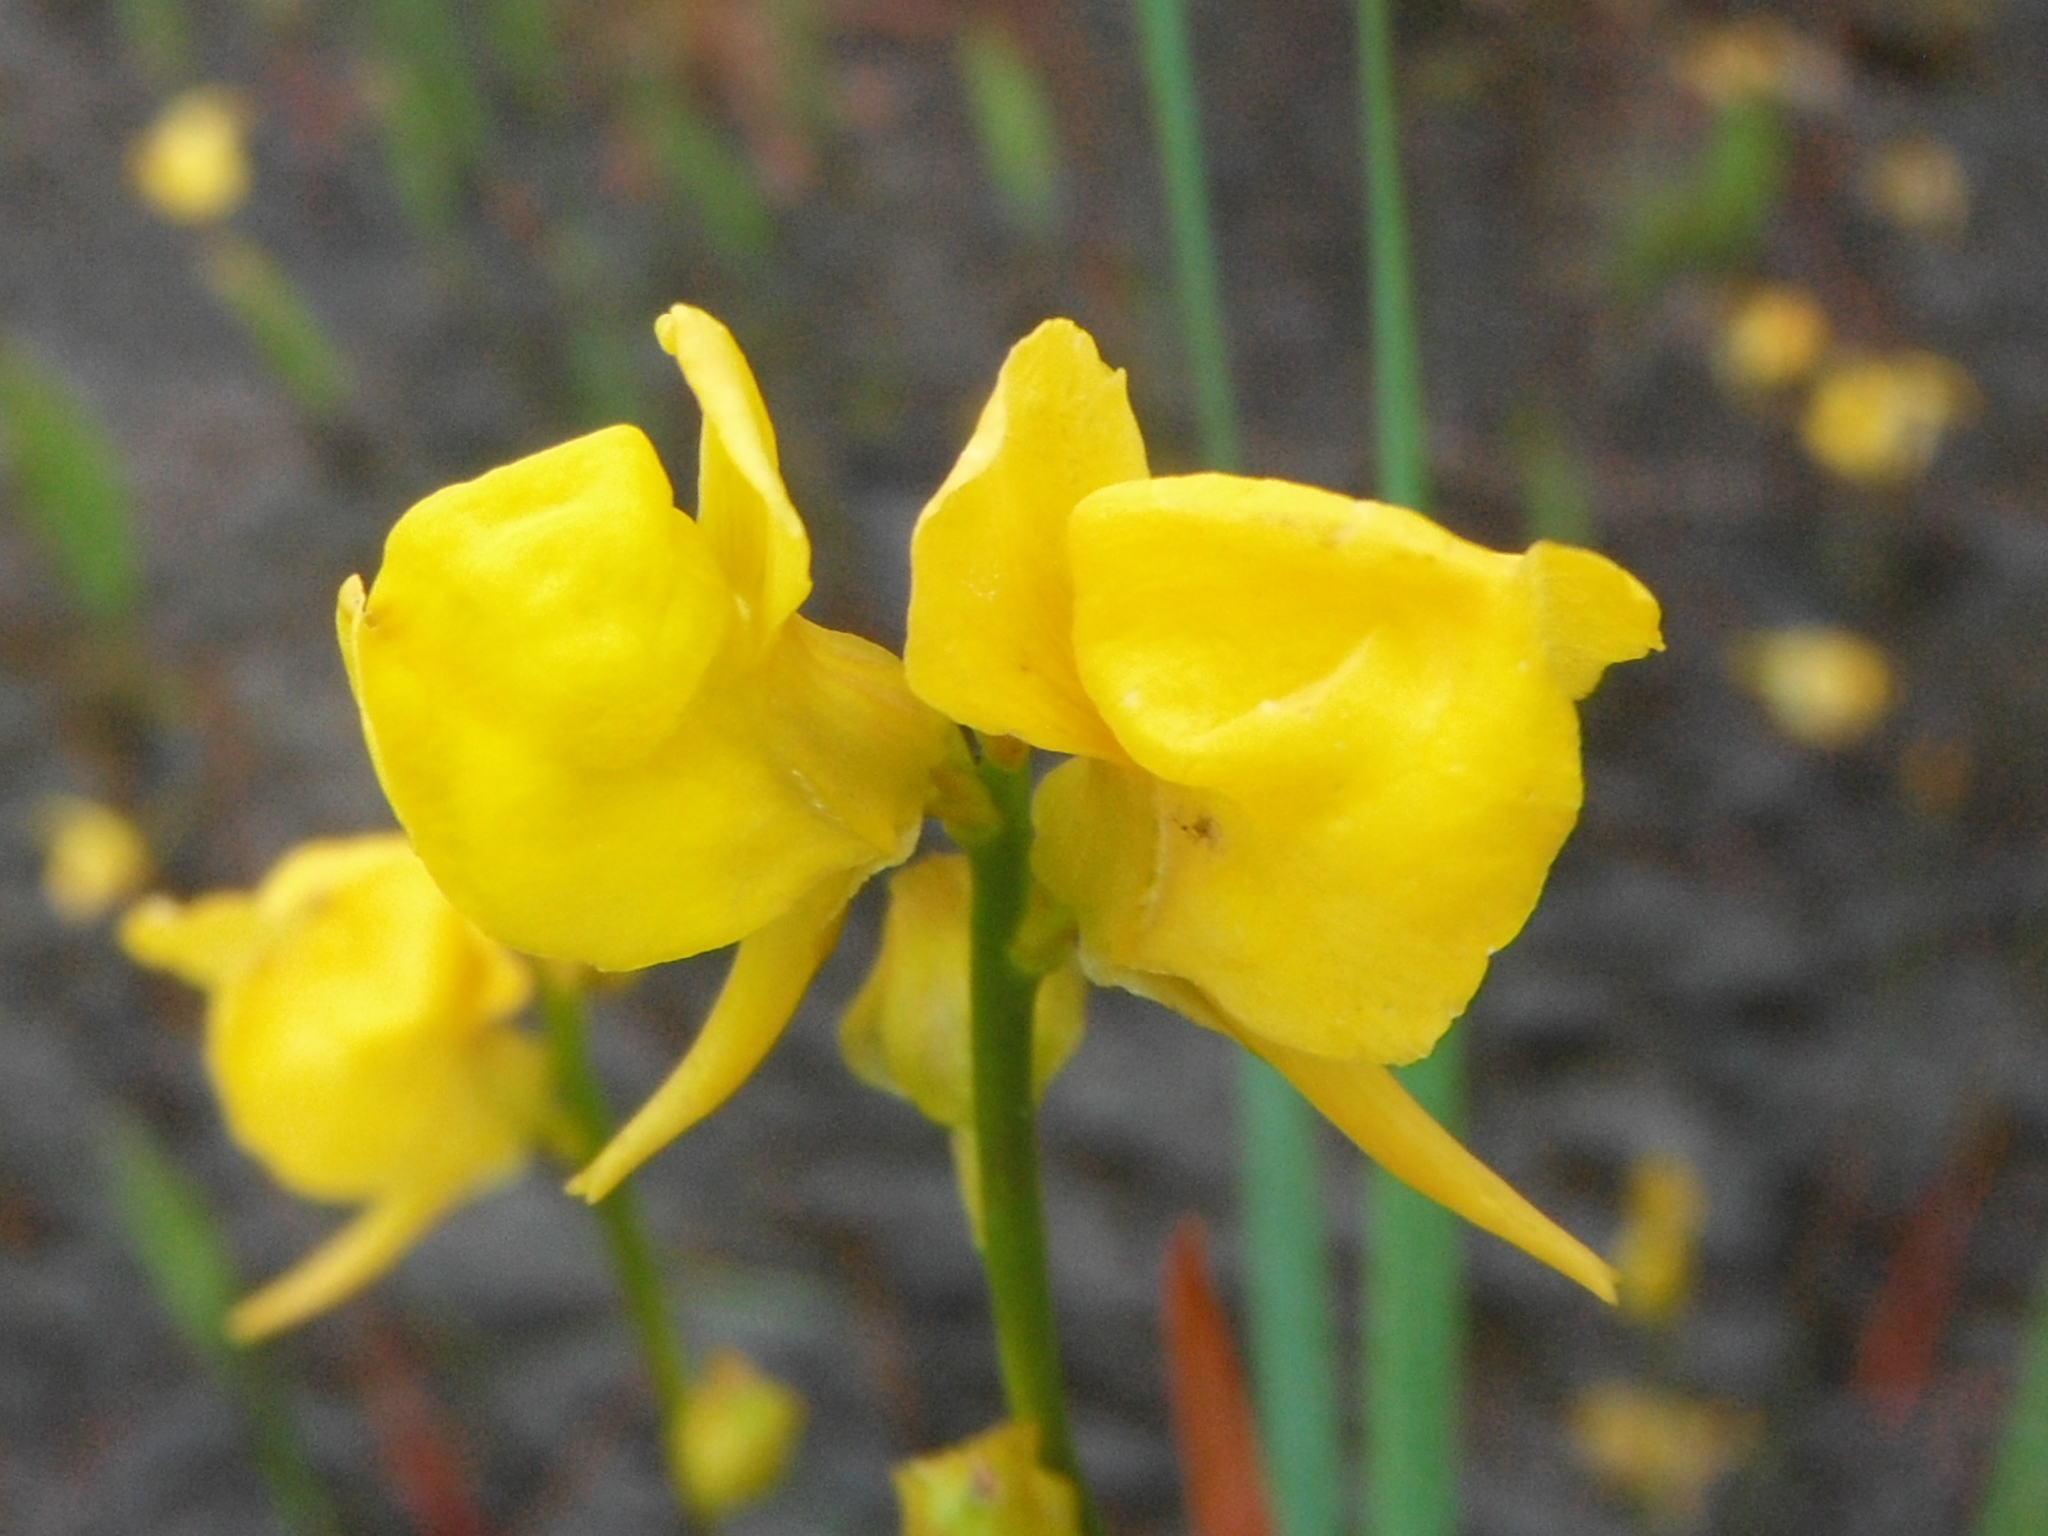 Utricularia cornuta